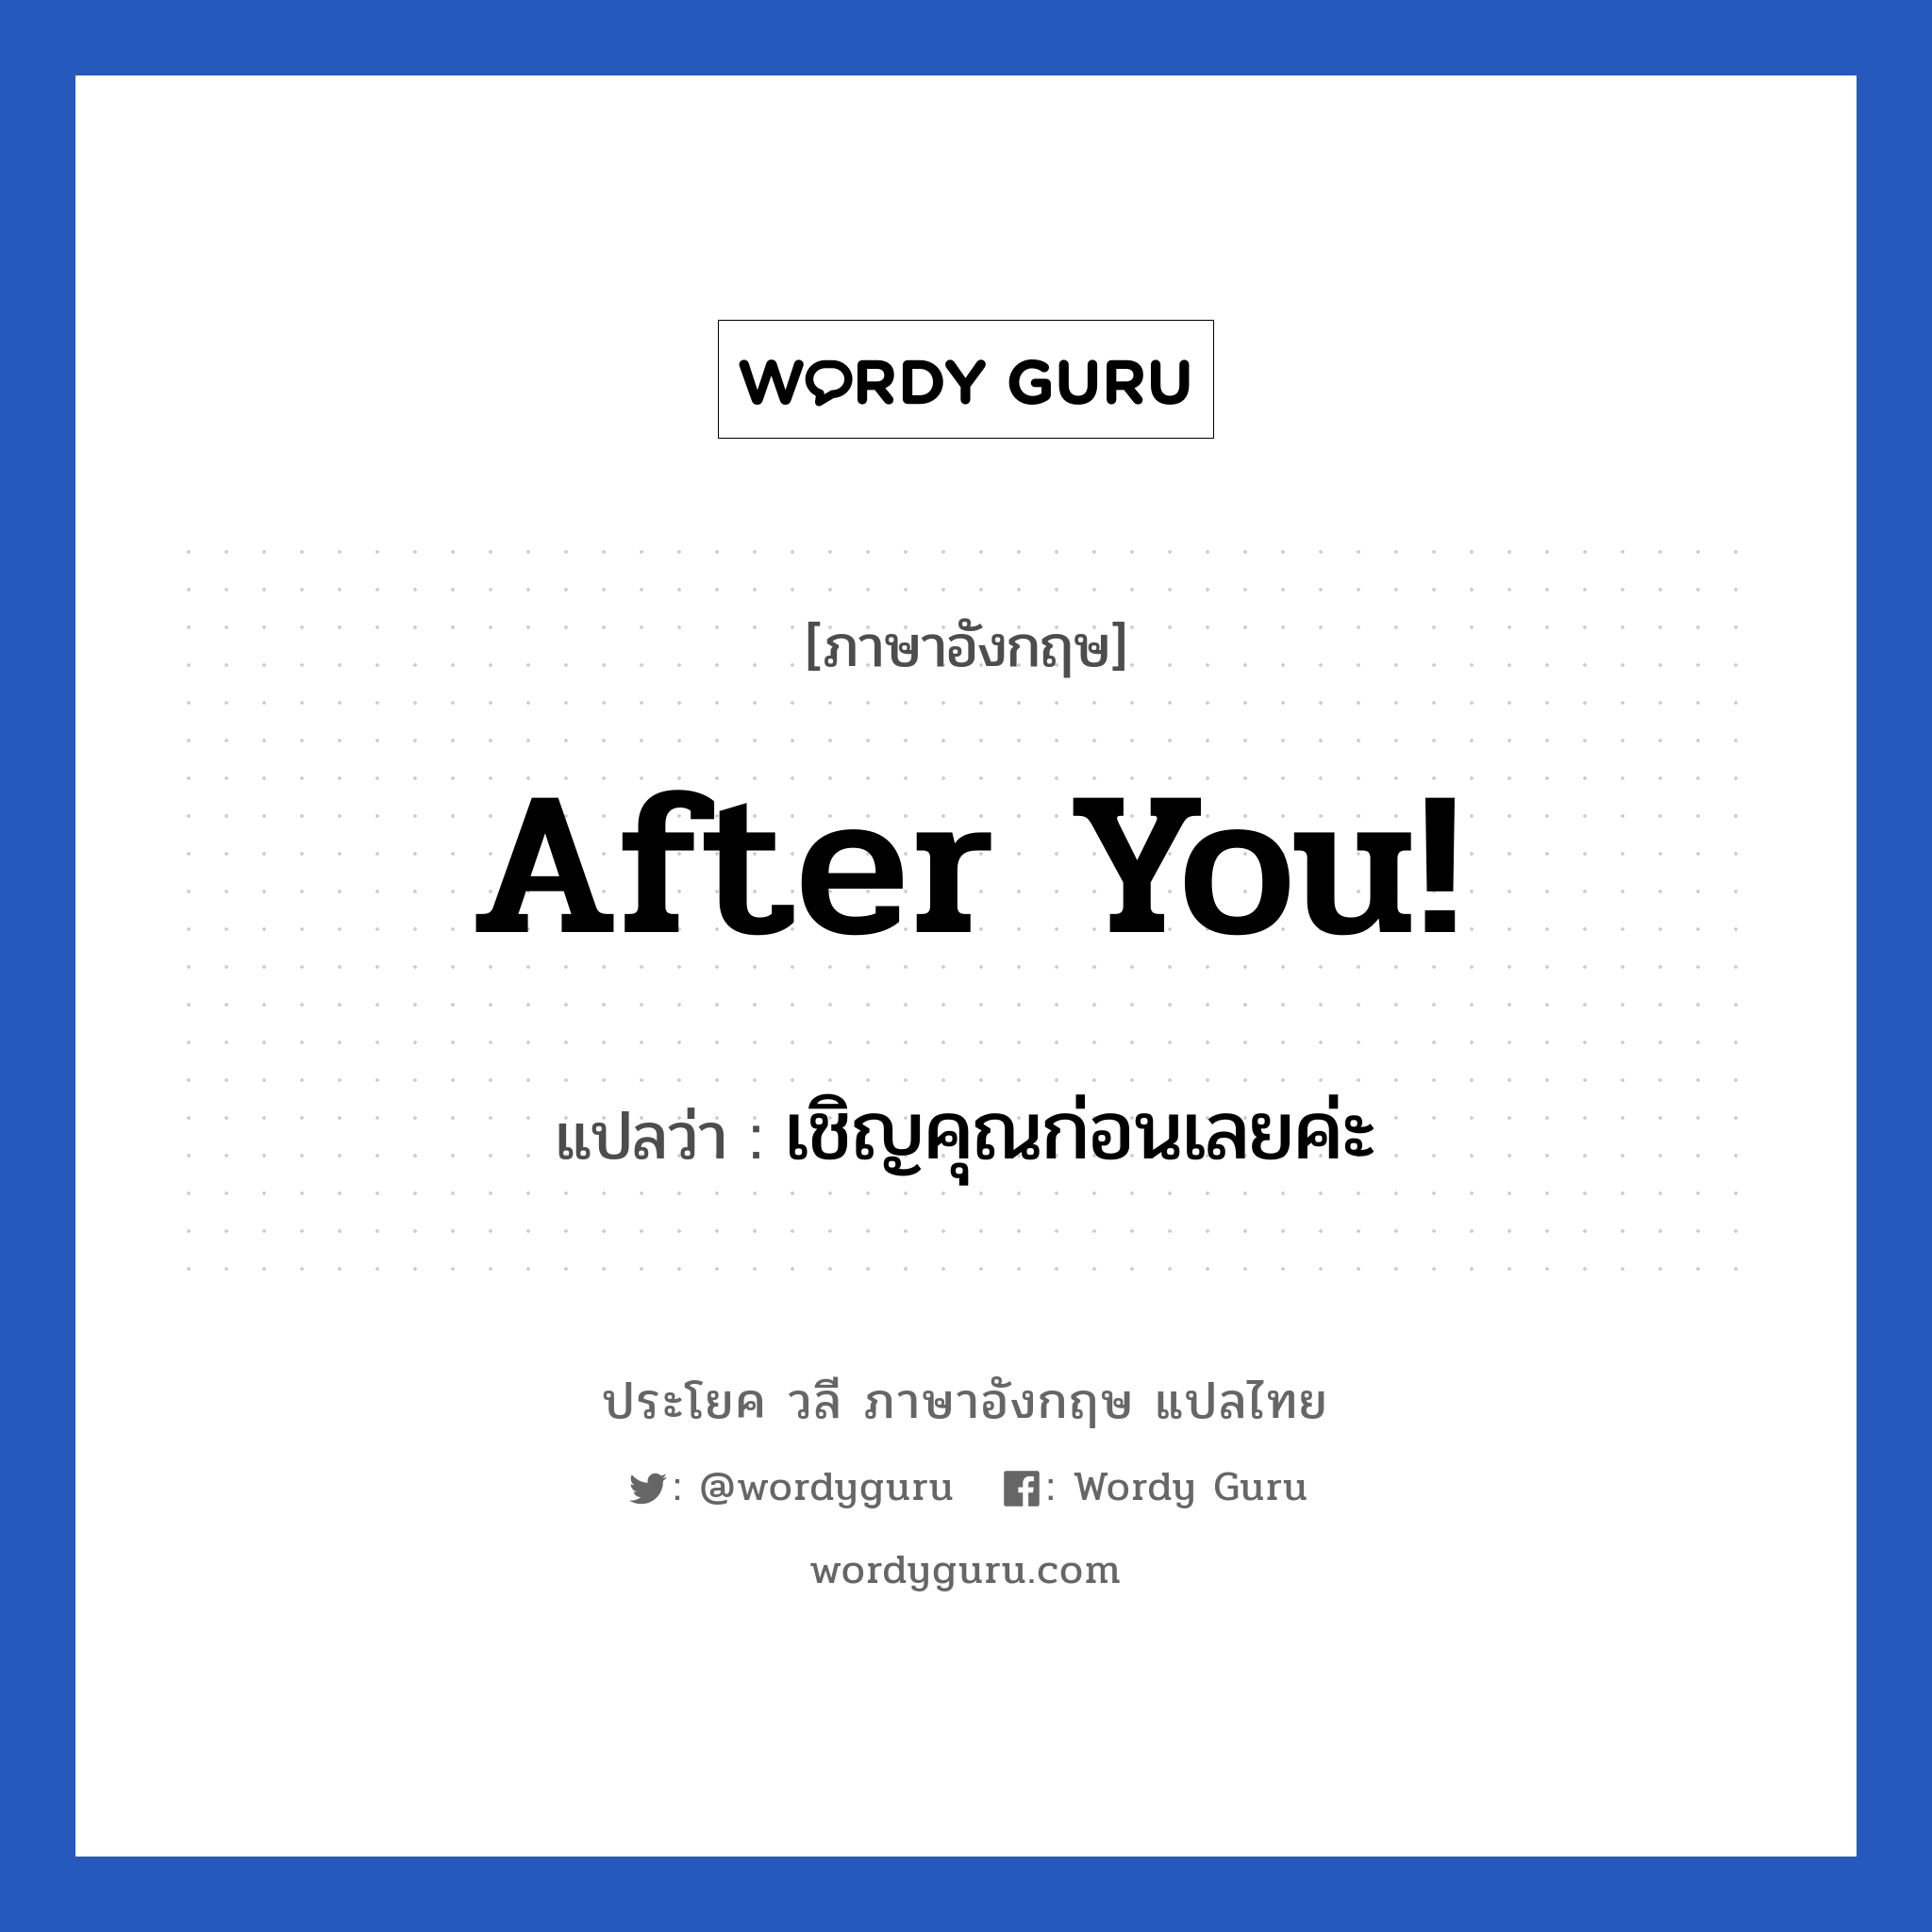 After you! แปลว่า?, วลีภาษาอังกฤษ After you! แปลว่า เชิญคุณก่อนเลยค่ะ